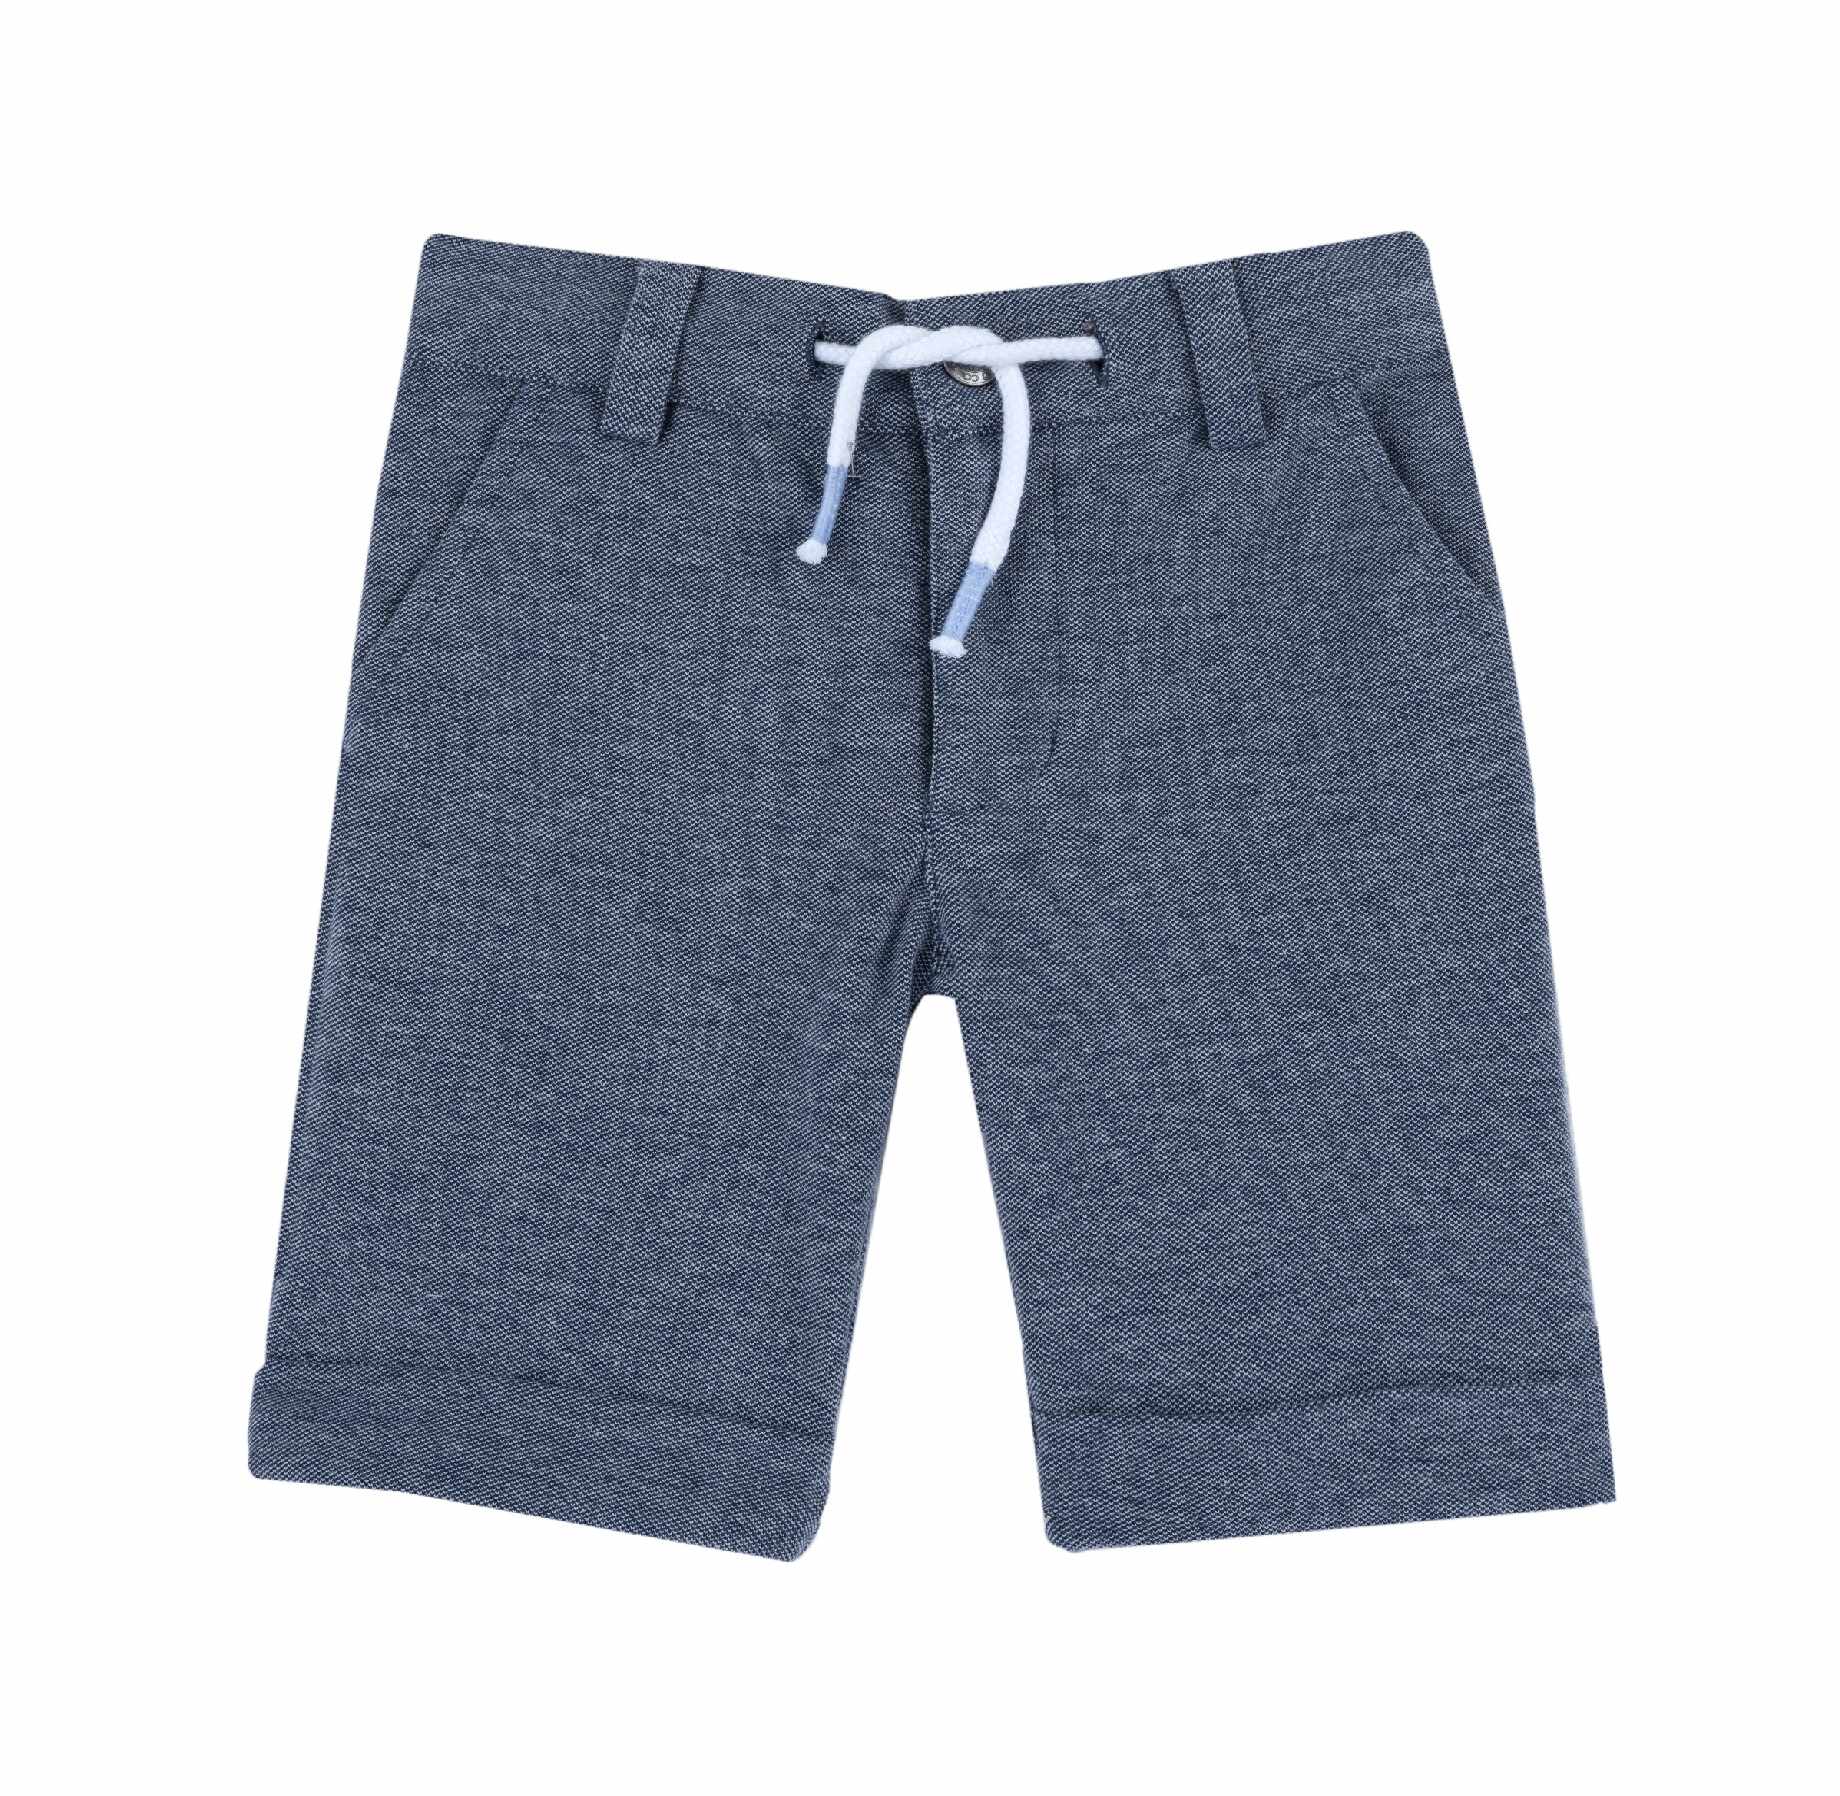 Pantaloni copii Chicco, Albastru, 00054-64MC